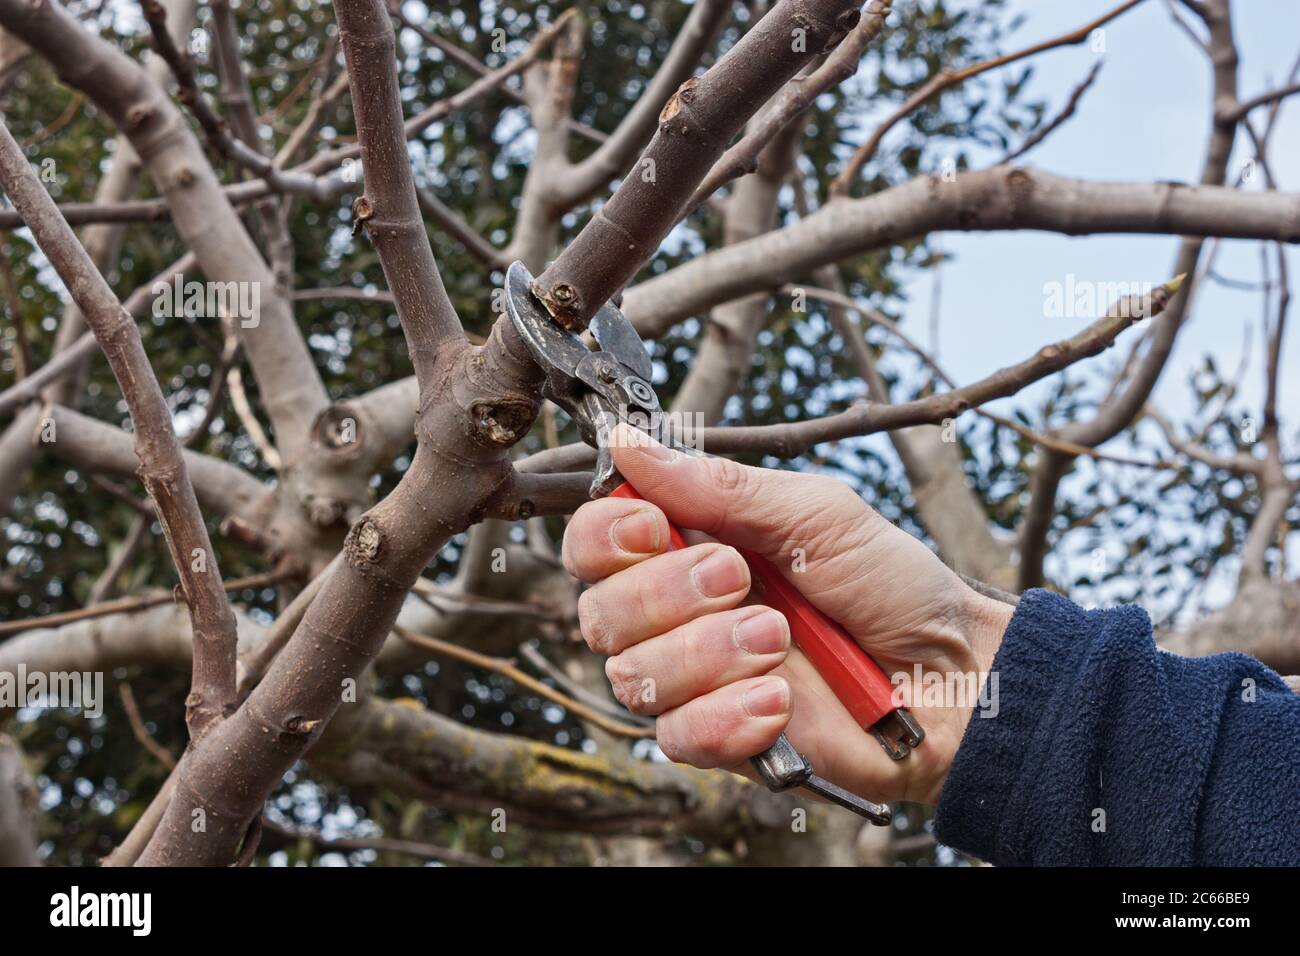 potatura di un albero, lavoro agricolo invernale - potatrice che taglia un ramo con cesoie Foto Stock